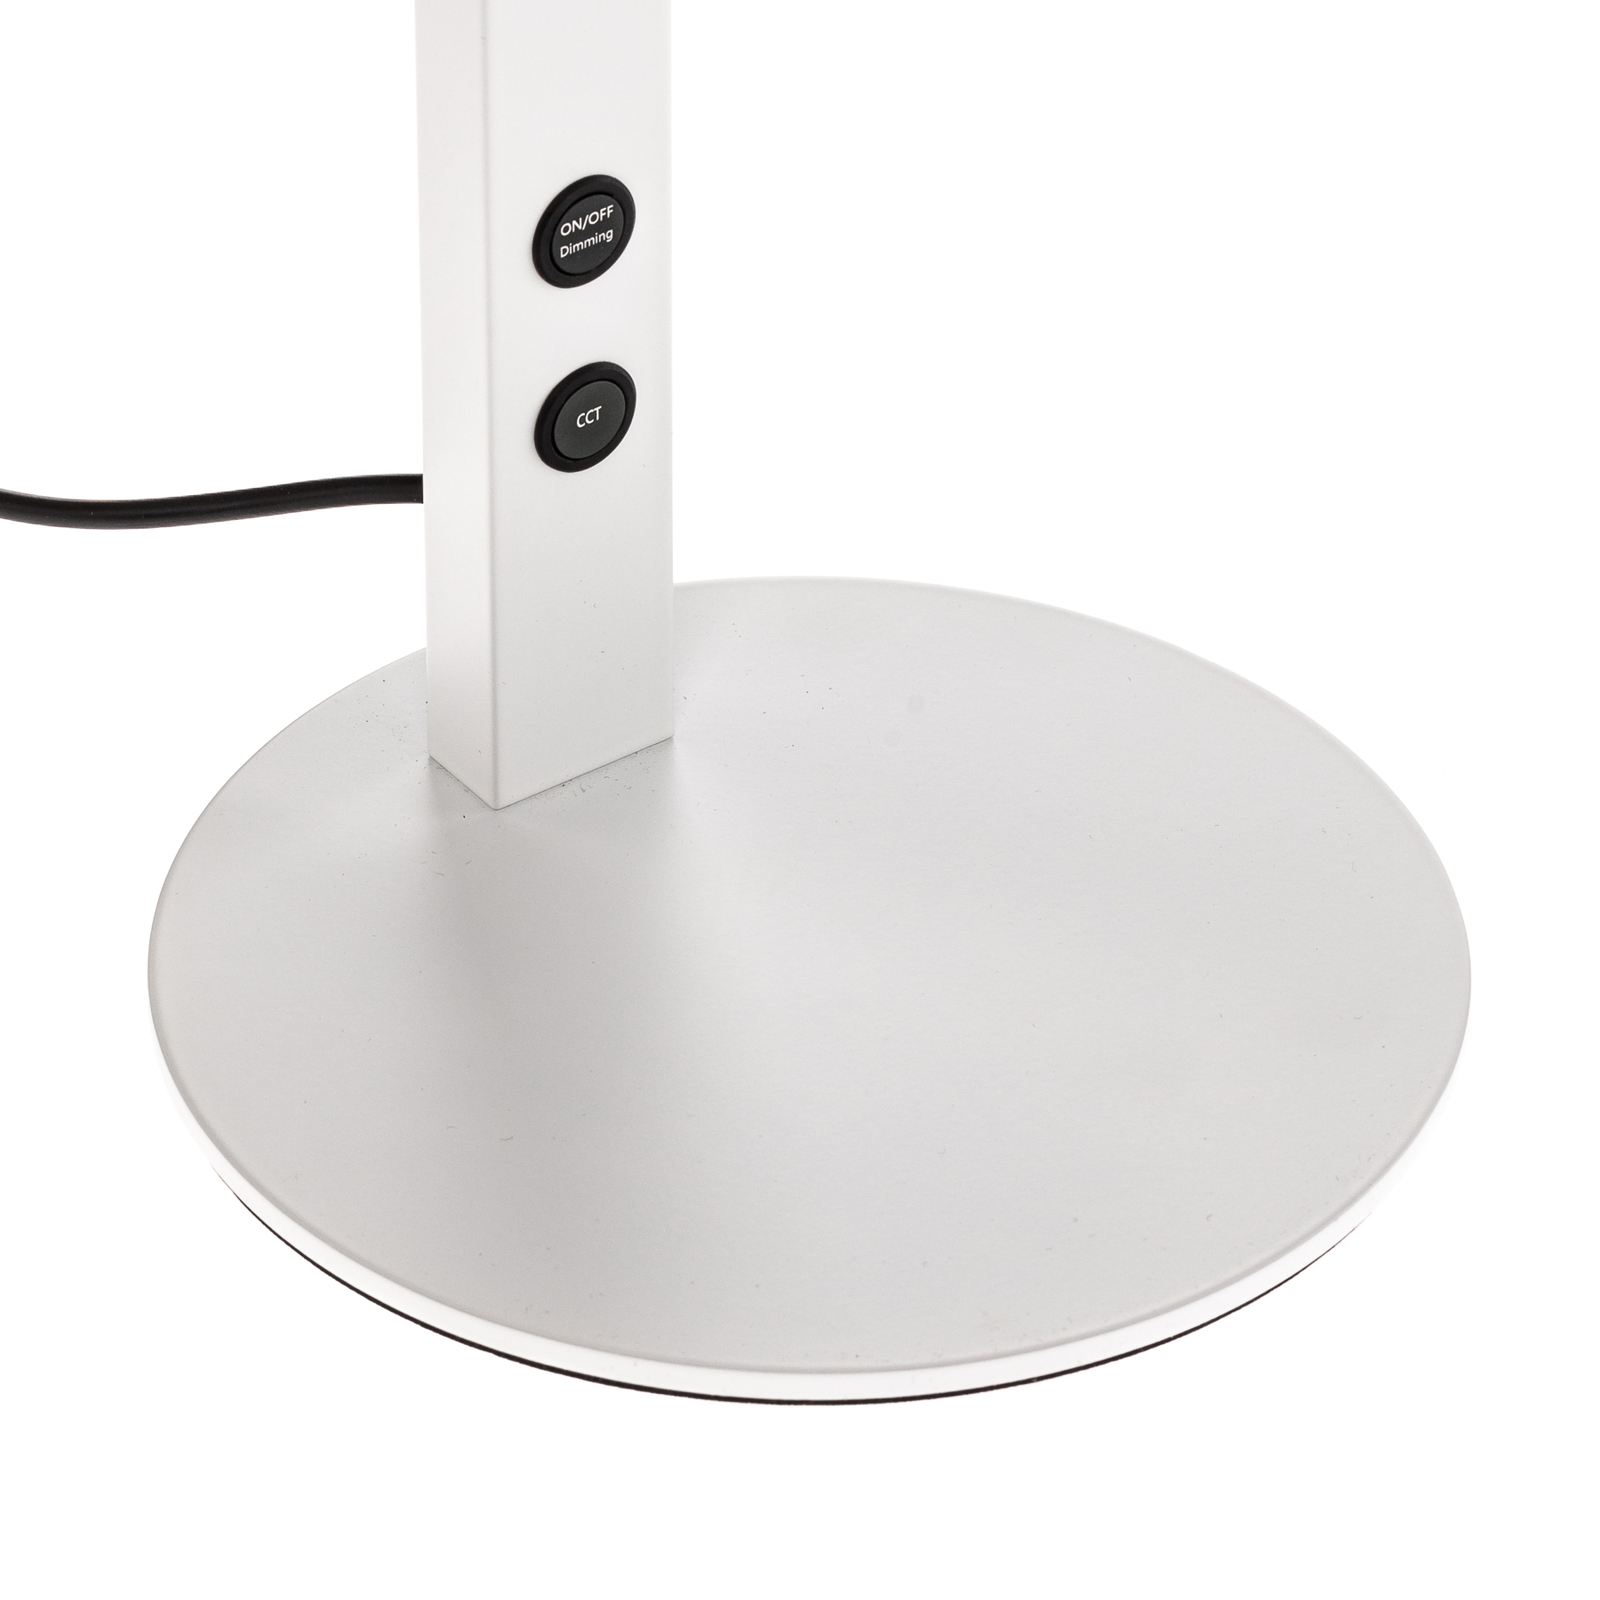 LED íróasztal lámpa Ideal szab. kapcsolóval, fehér